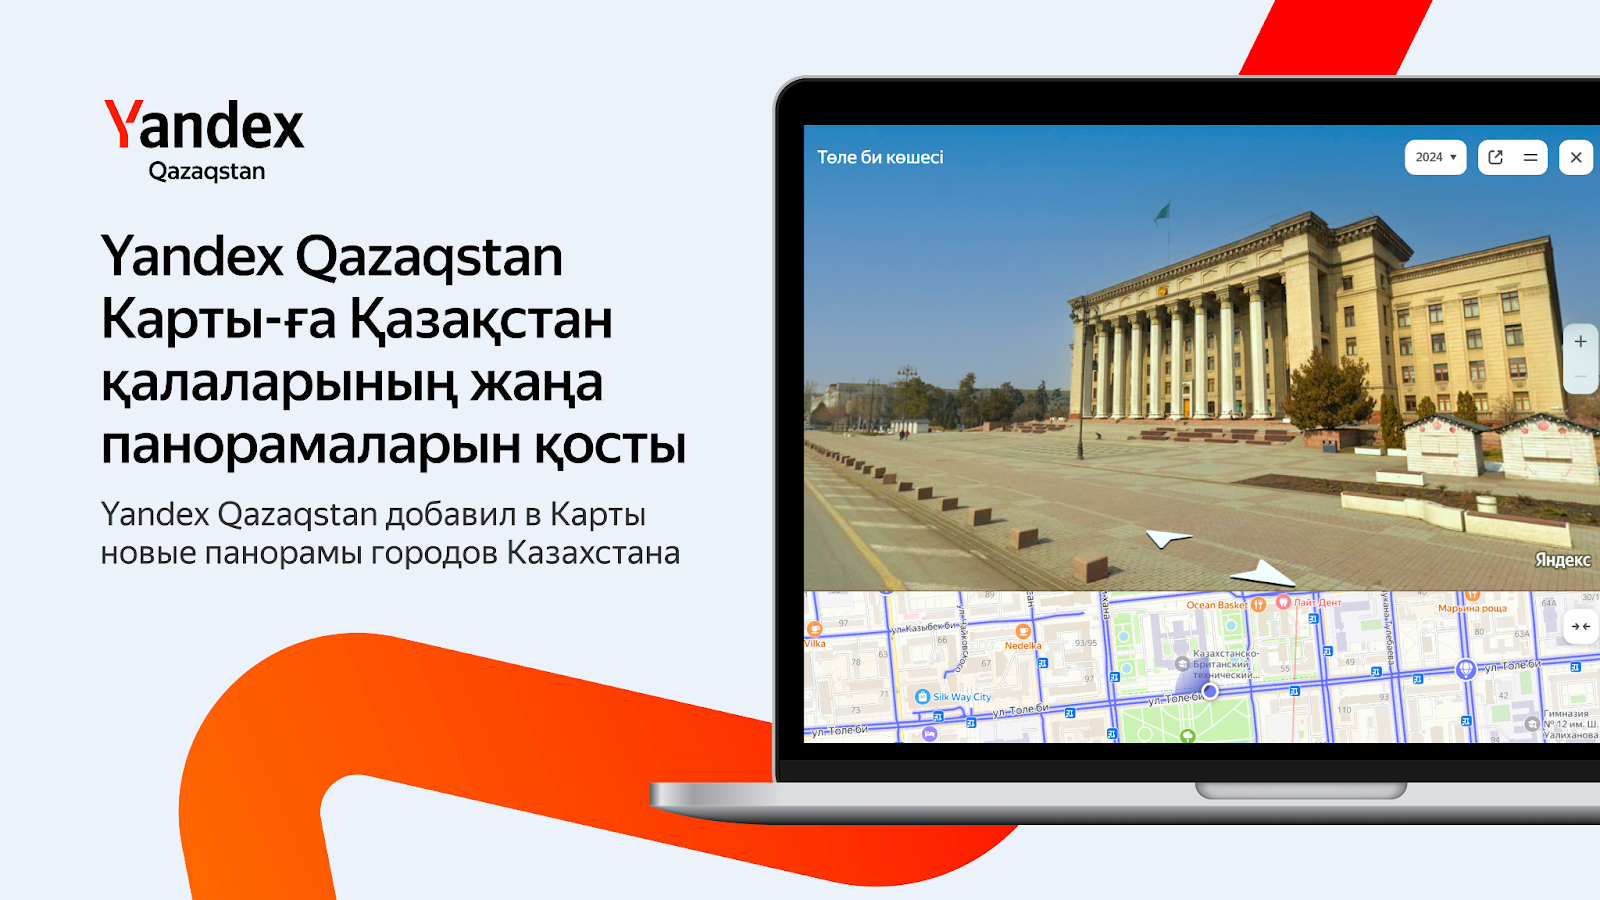 Yandex Qazaqstan добавил в Карты новые панорамы городов Казахстана